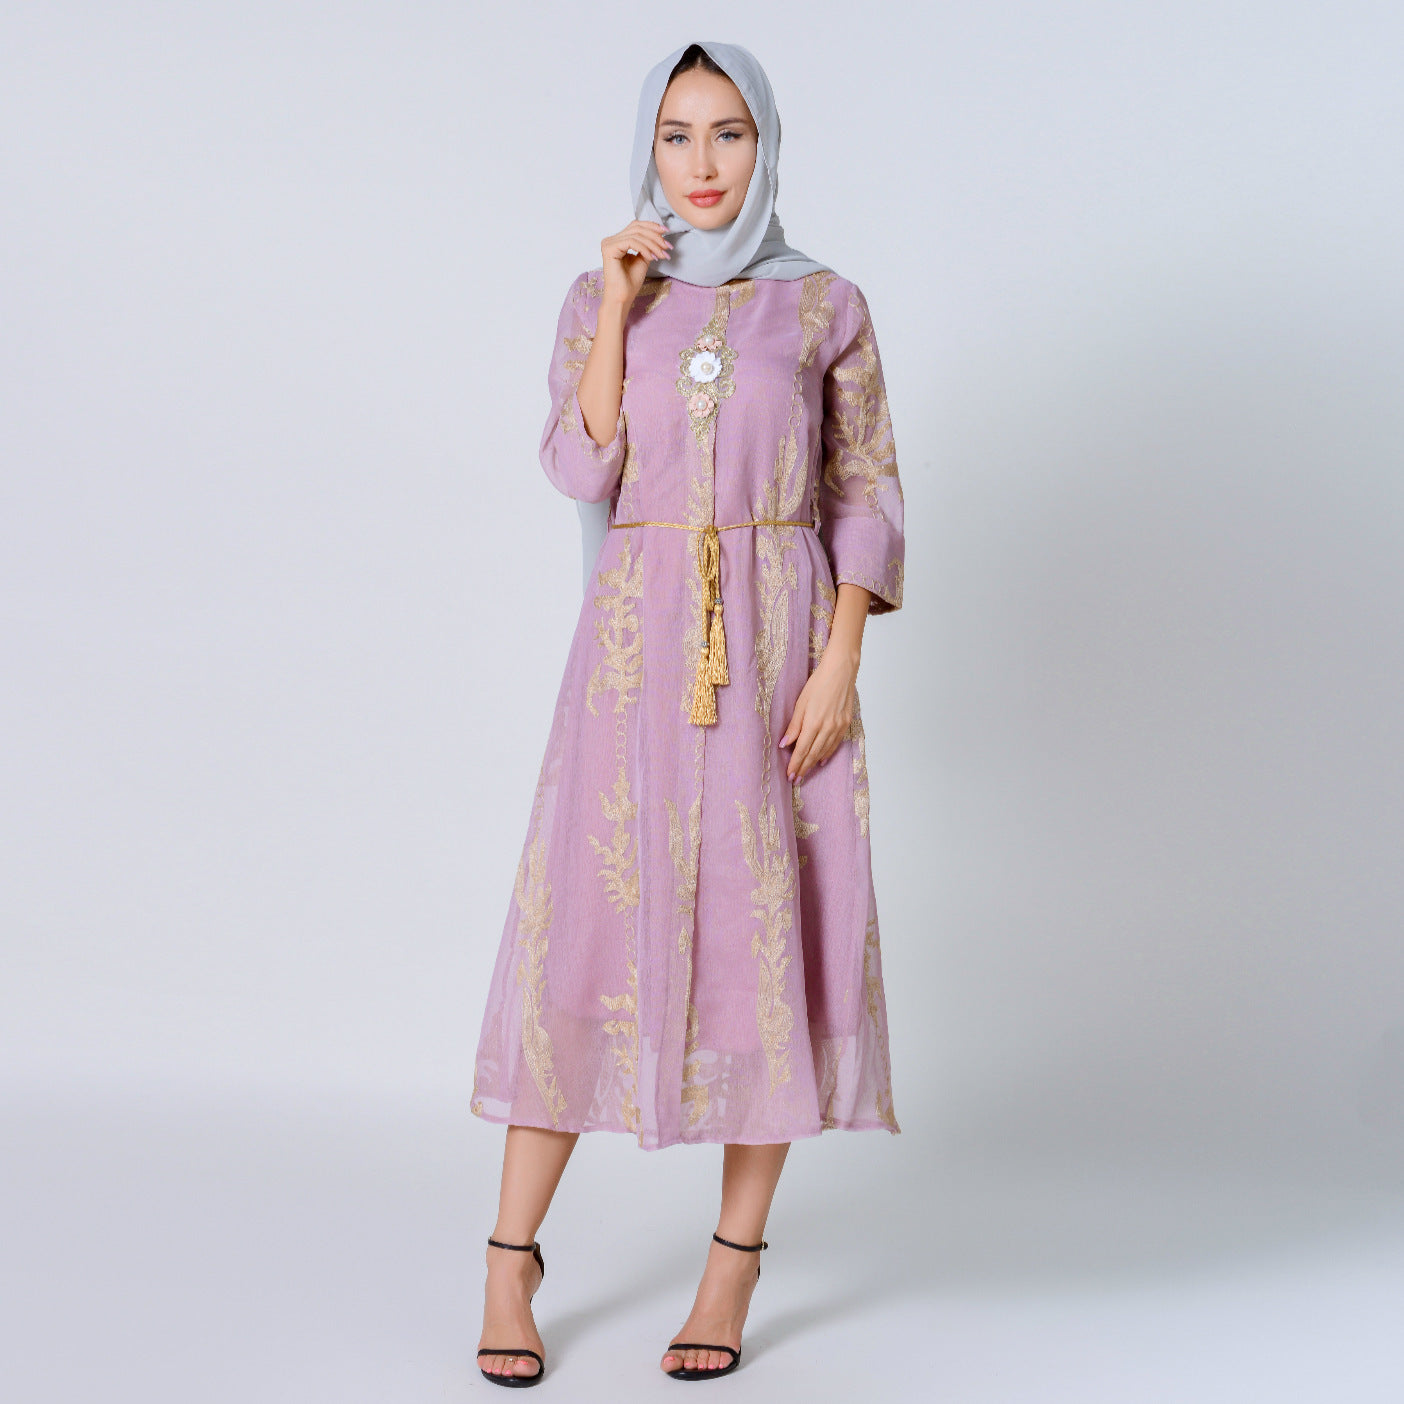 أزياء شخصية المرأة المسلمة الشخصية النسائية ملابس نسائية نسائية إسلامية